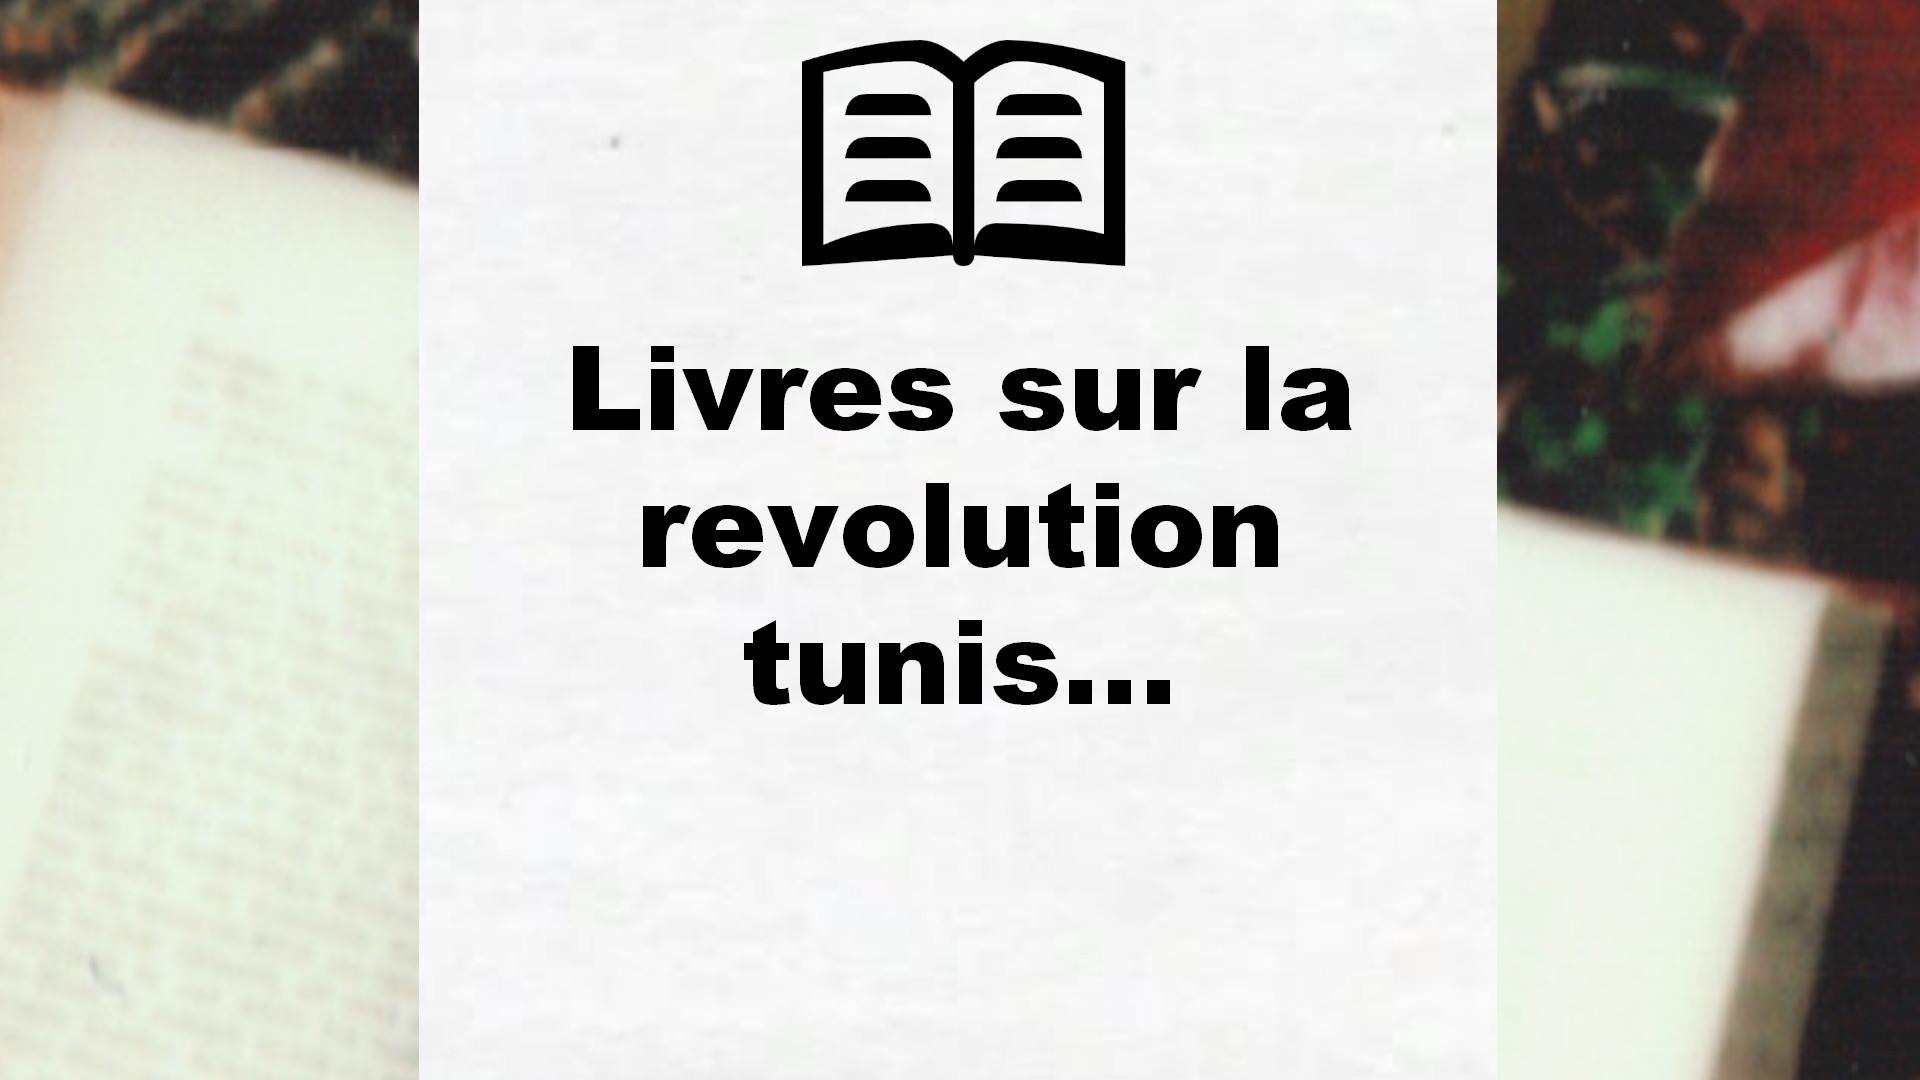 Livres sur la revolution tunisienne